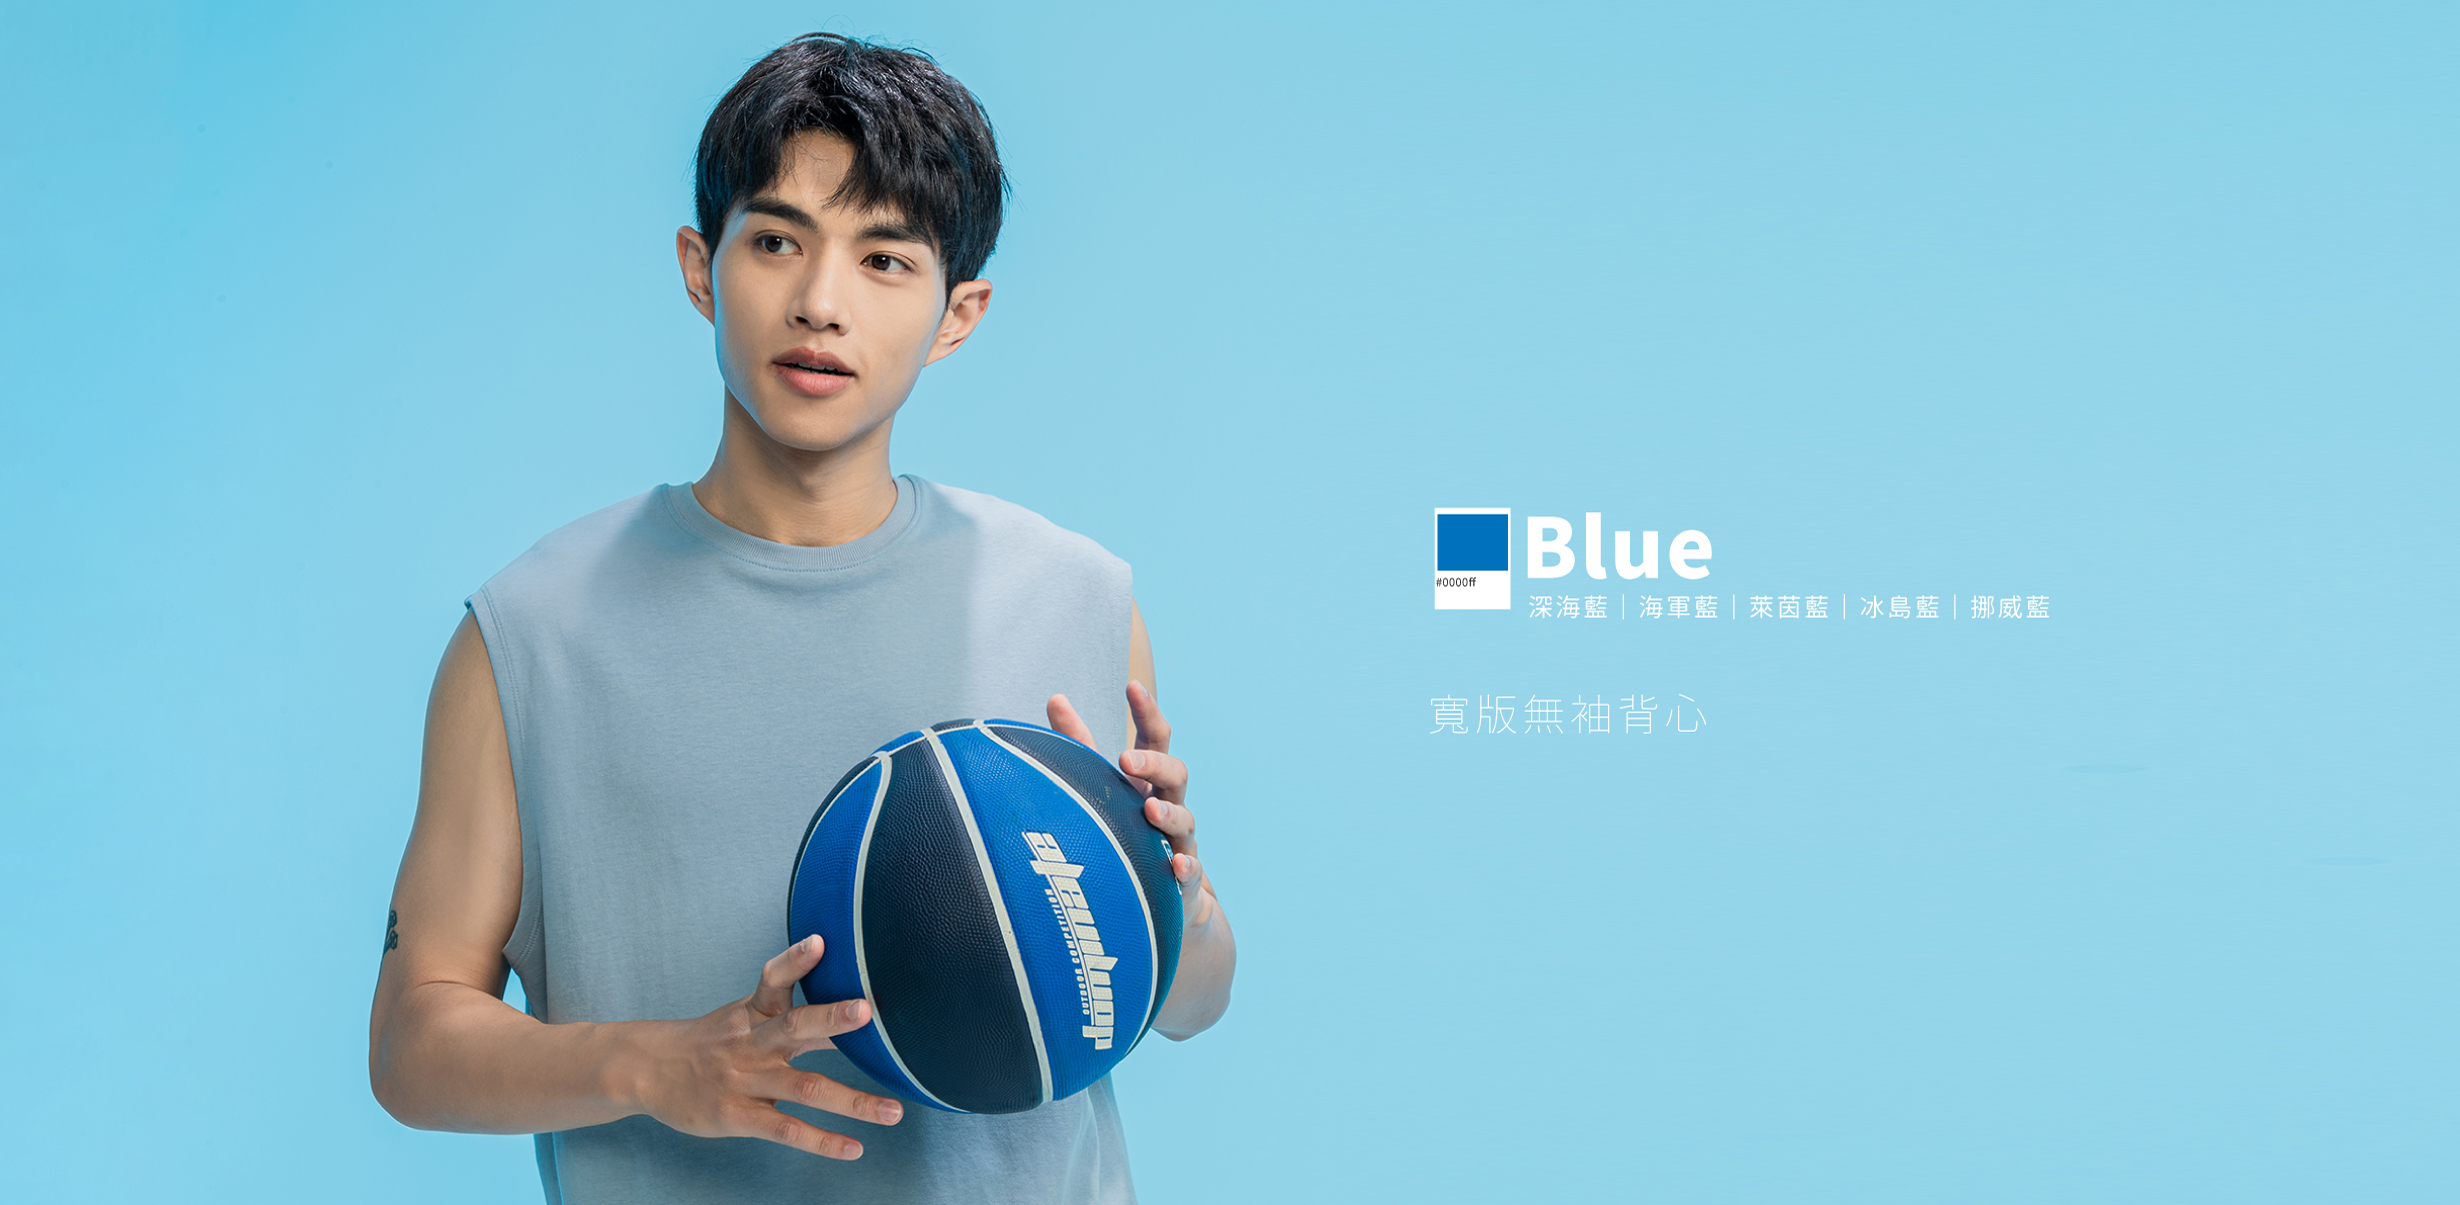 雙手拿一顆藍色的籃球，穿著藍色寬版無袖背心的男孩，blue、深海藍、海軍藍、萊茵藍、冰島藍、挪威藍，多種藍色系穿搭